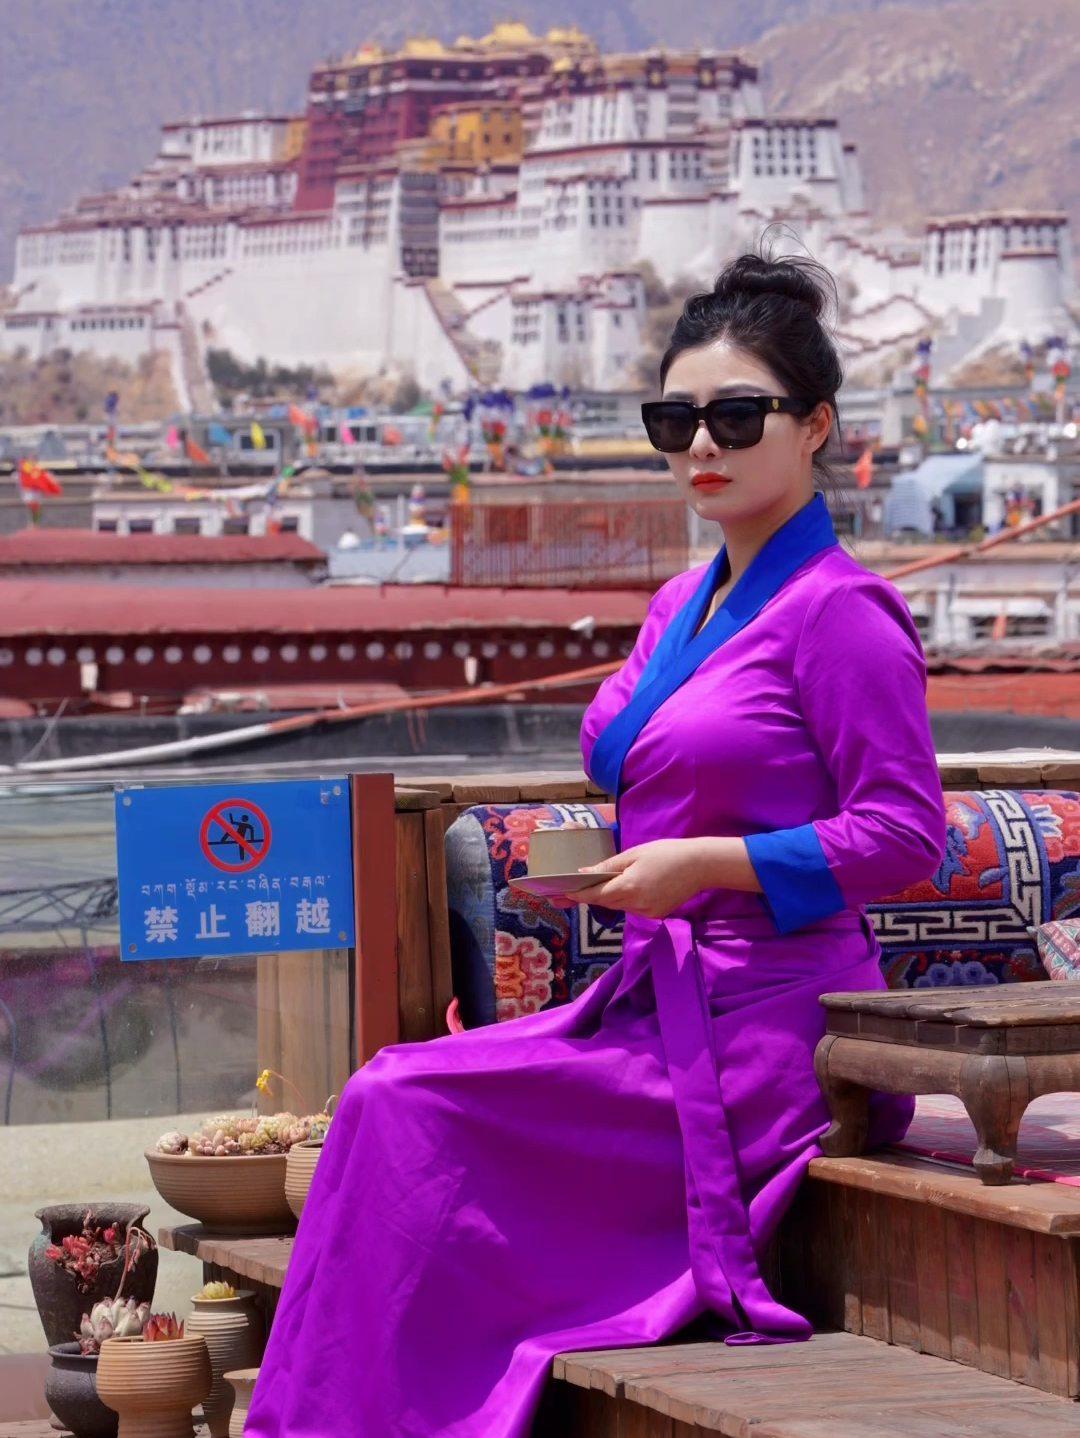 虽说我们从未谋面，你确实我最熟悉的诗篇……#西藏 #拉萨#布达拉宫